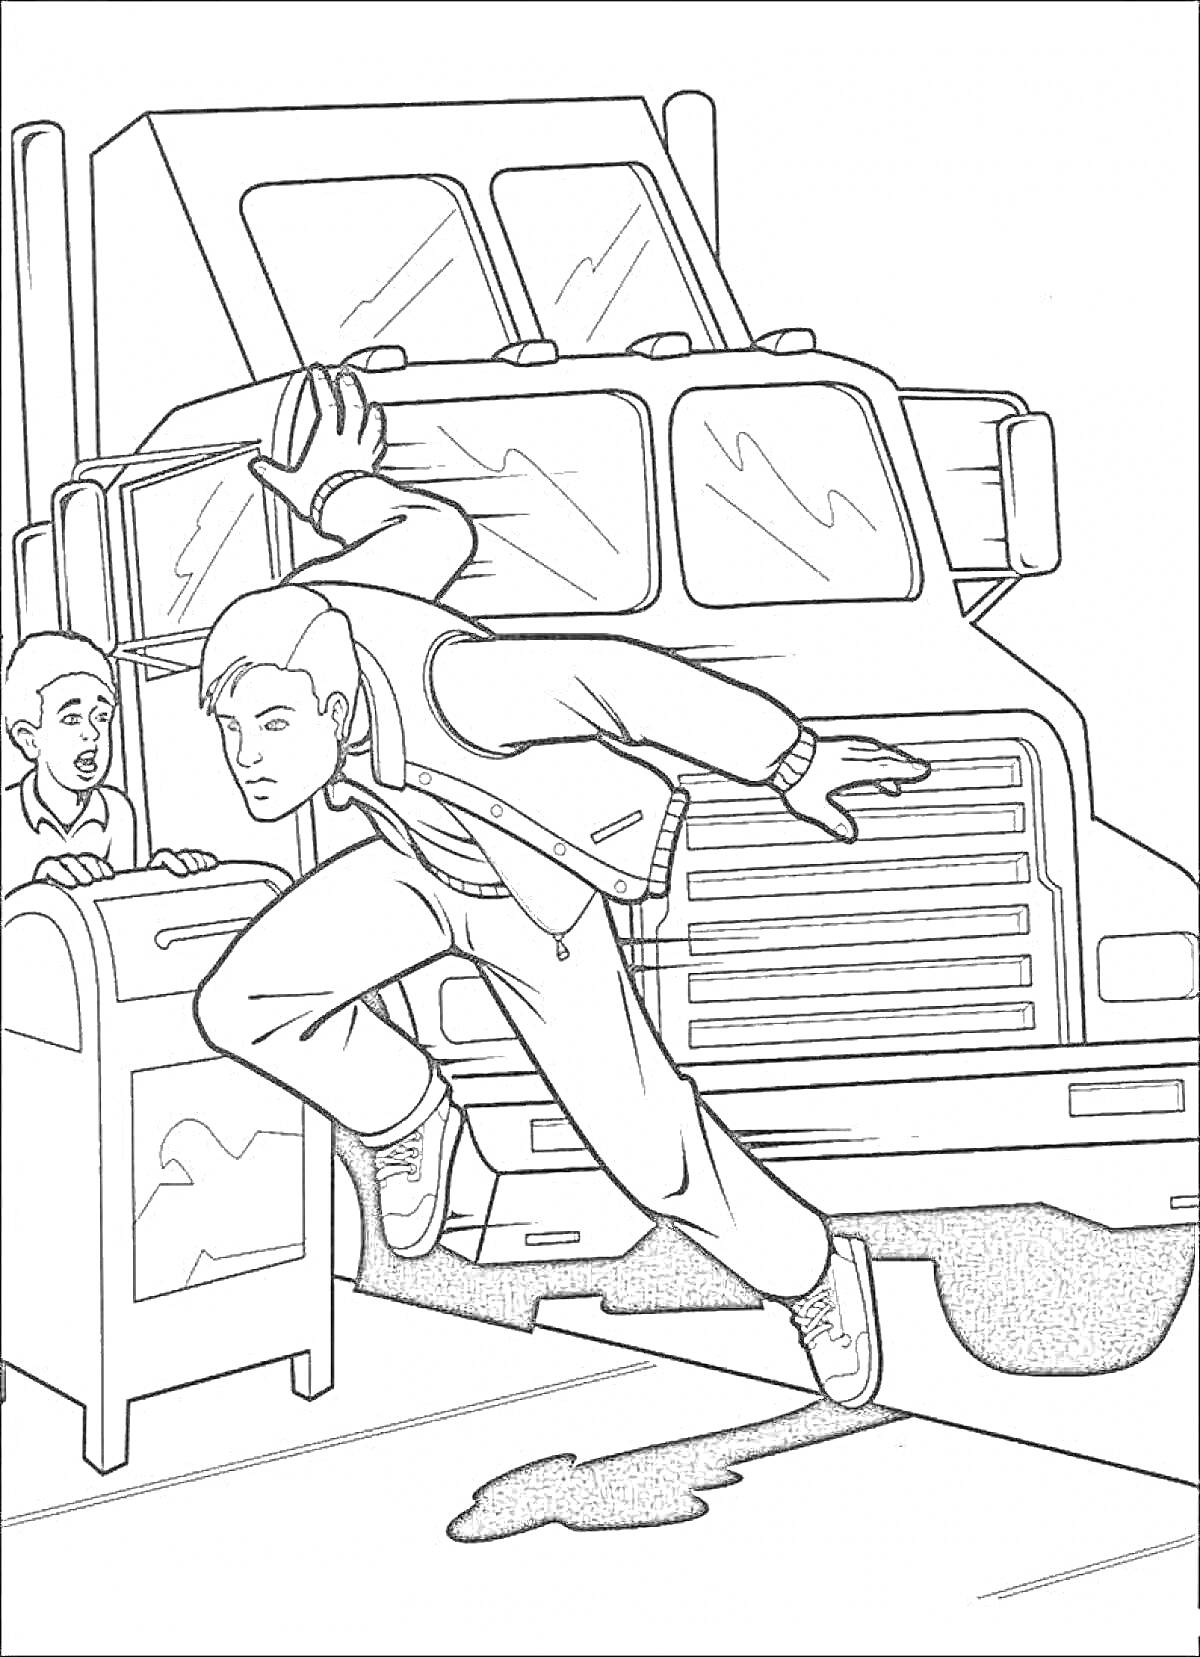 Раскраска Питер Паркер прыгает мимо почтового ящика рядом с человеком на фоне грузовика